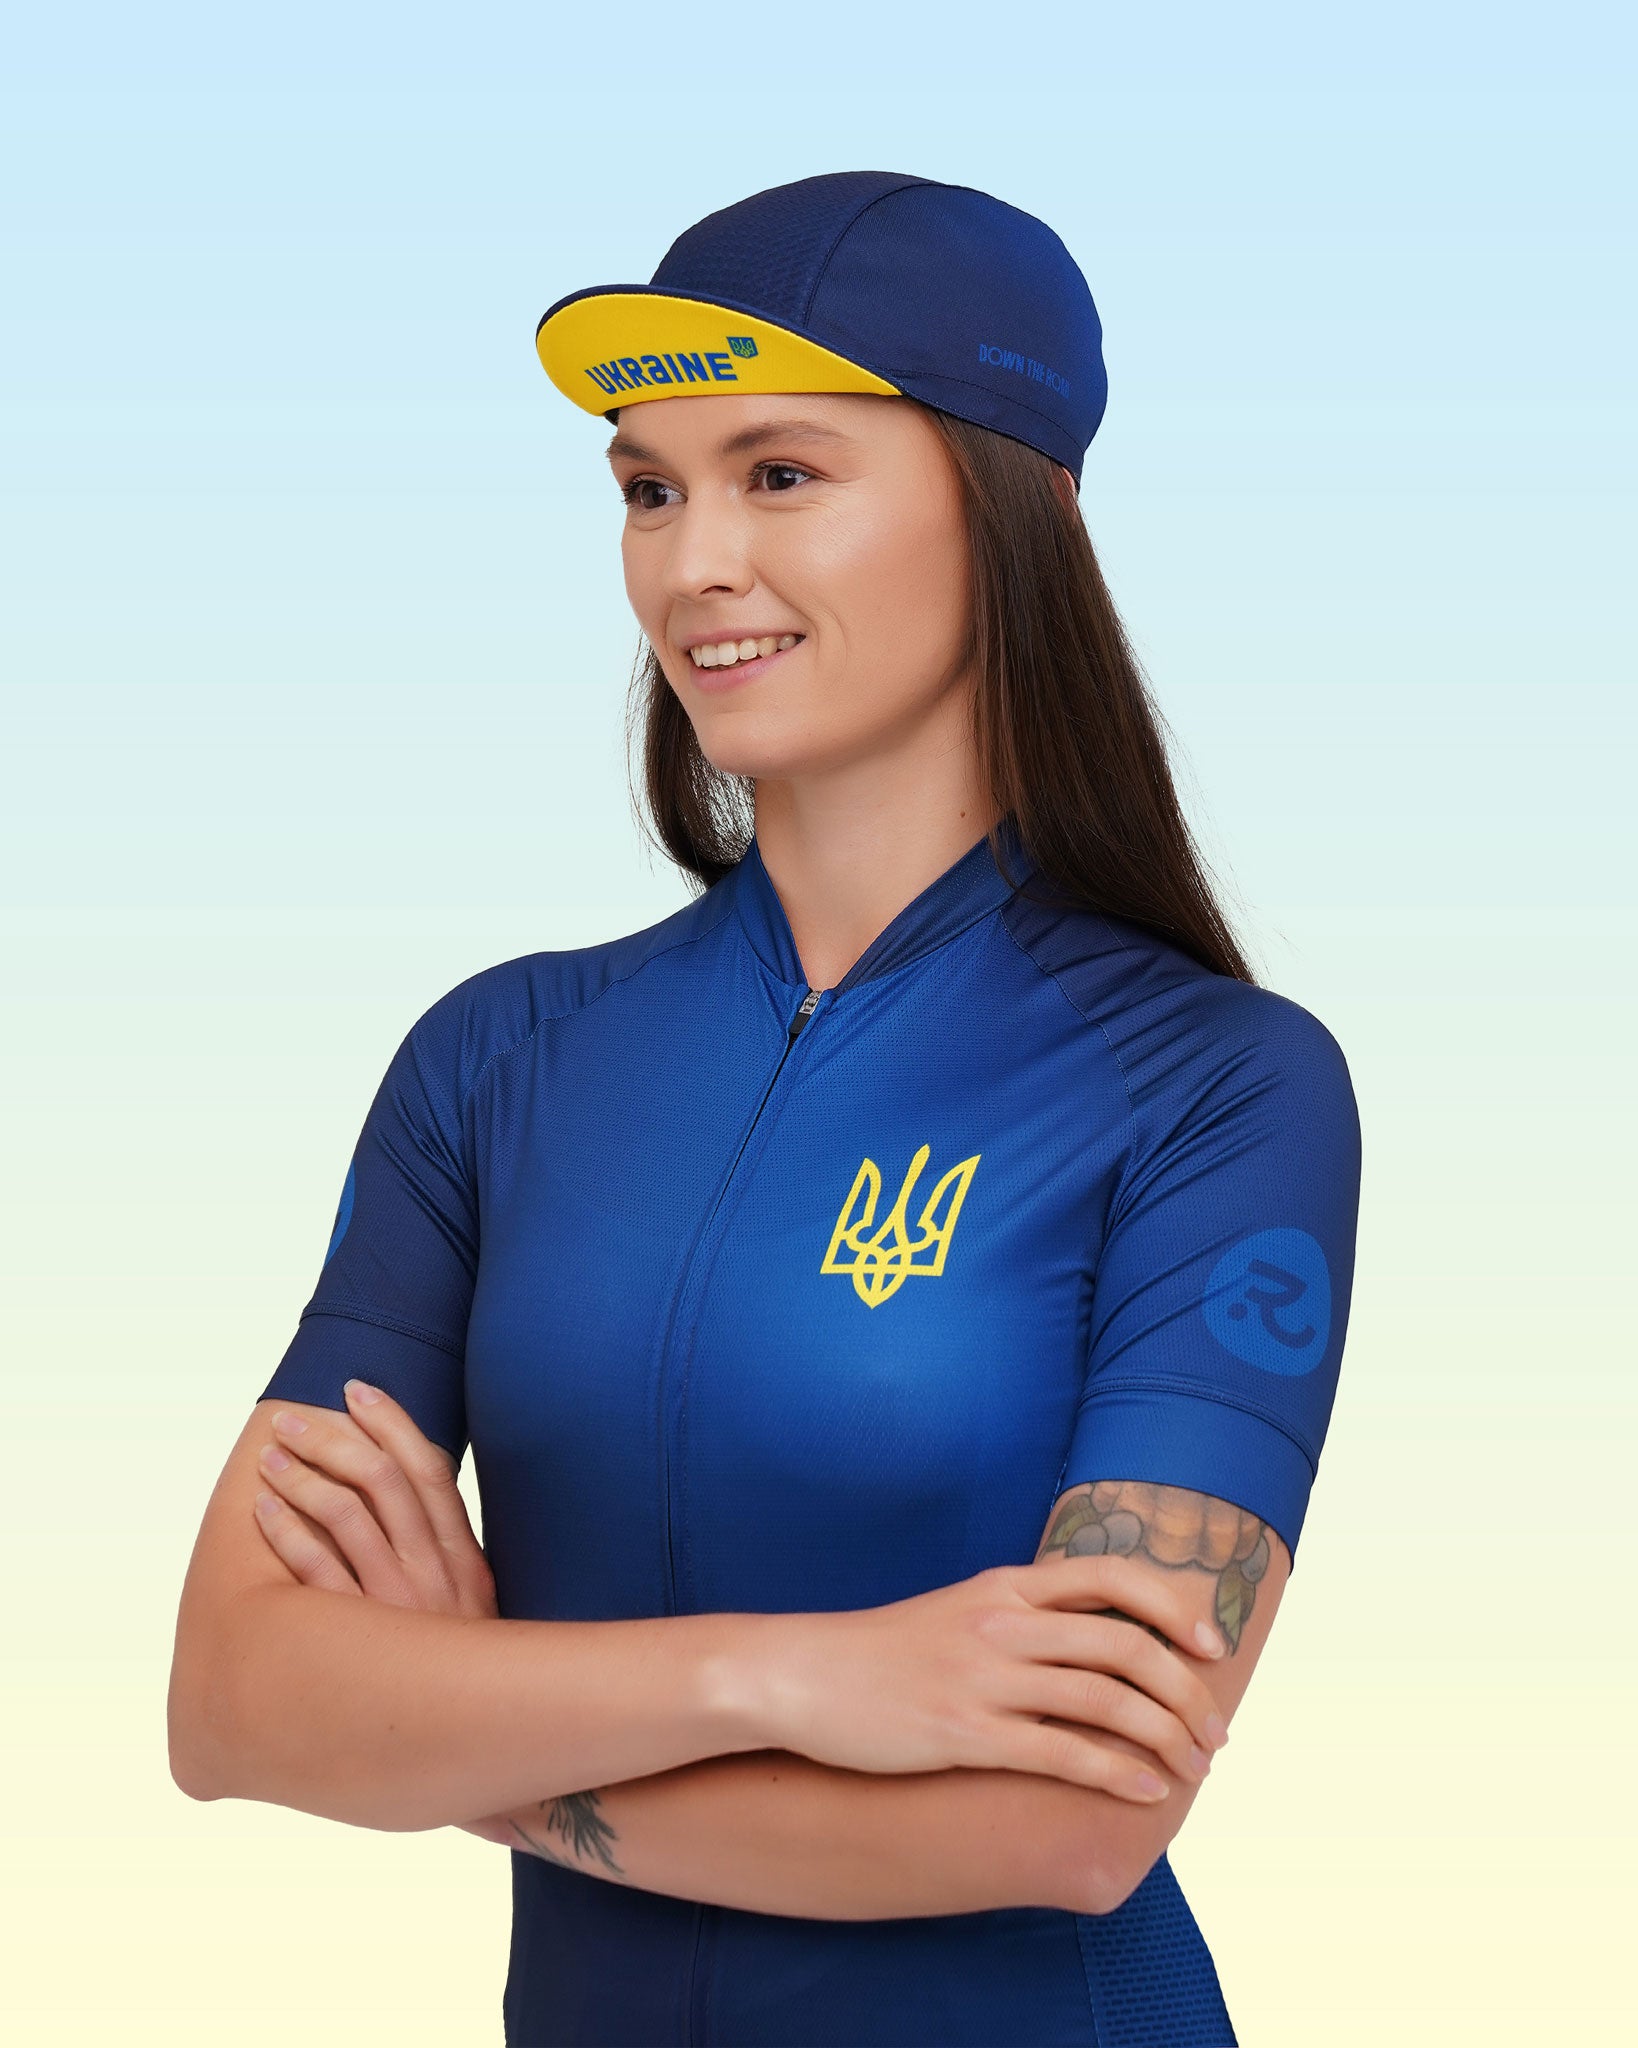 ukrainian cycling gear